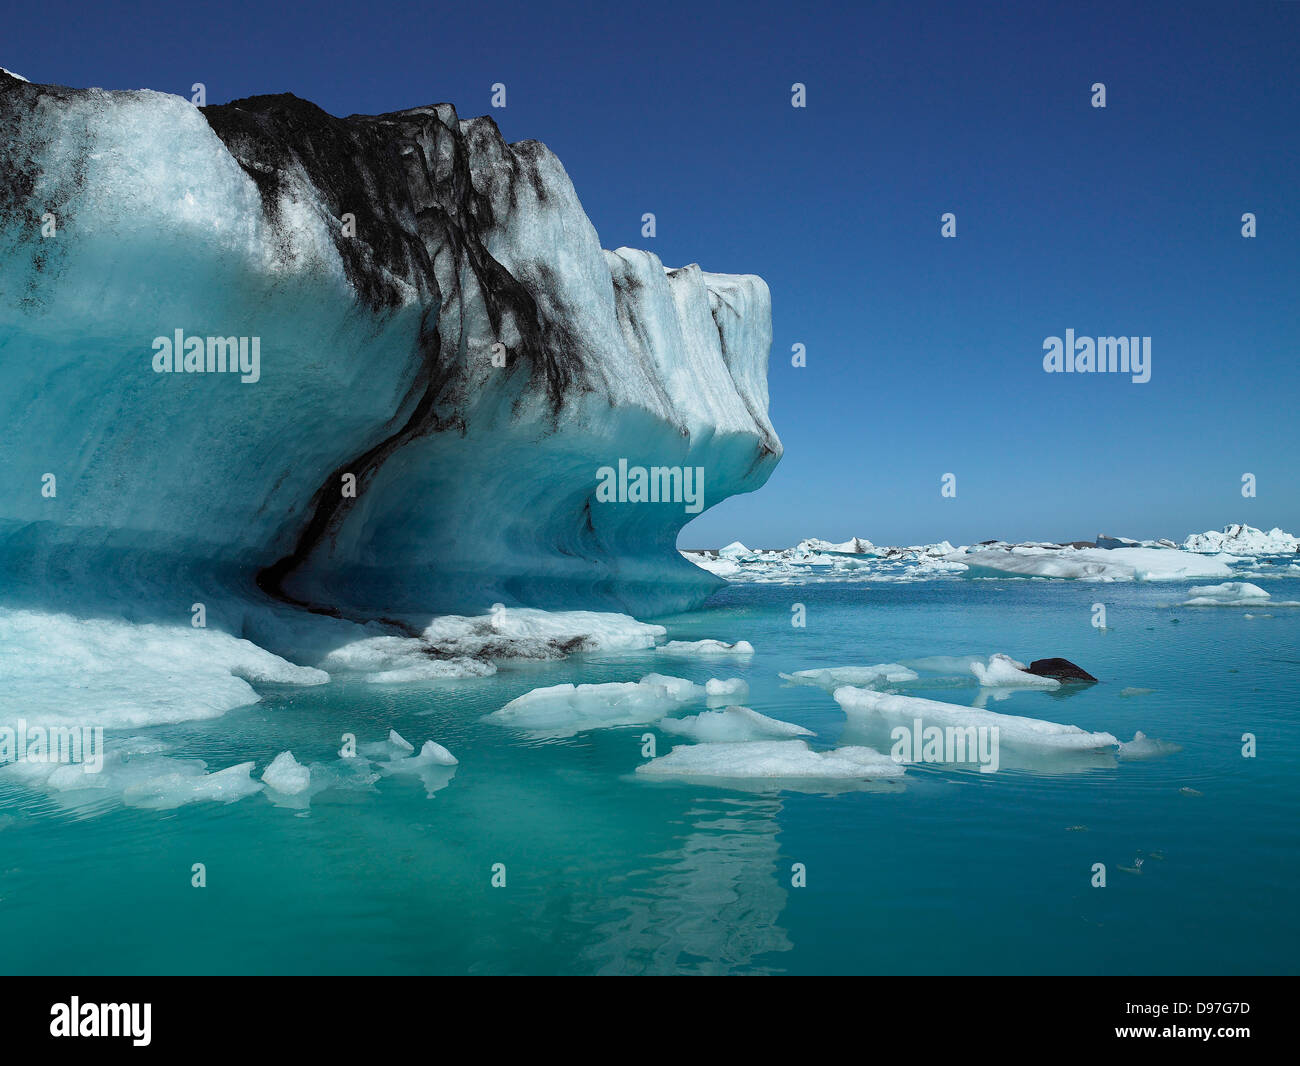 Les icebergs dans le Glacier Breidamerkurjokull, Jökulsárlón, calotte de glace, l'Islande Vatnajokull Banque D'Images